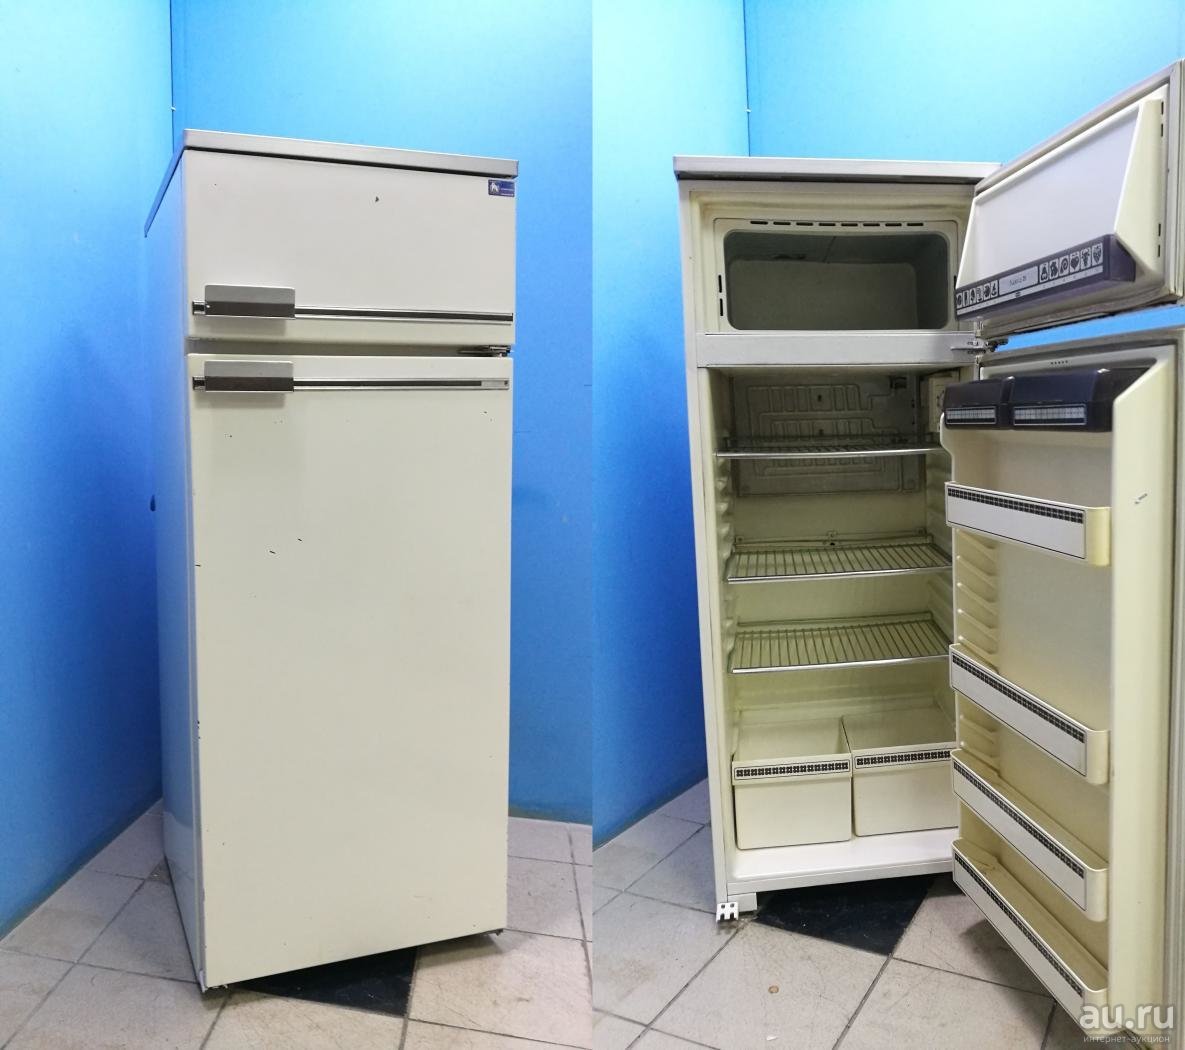 Авито ру холодильнике. Холодильник Бирюса 6033. Холодильник Бирюса 2-х камерный. Холодильник Бирюса старый однокамерный. Бытовой холодильник «Бирюса r110са».